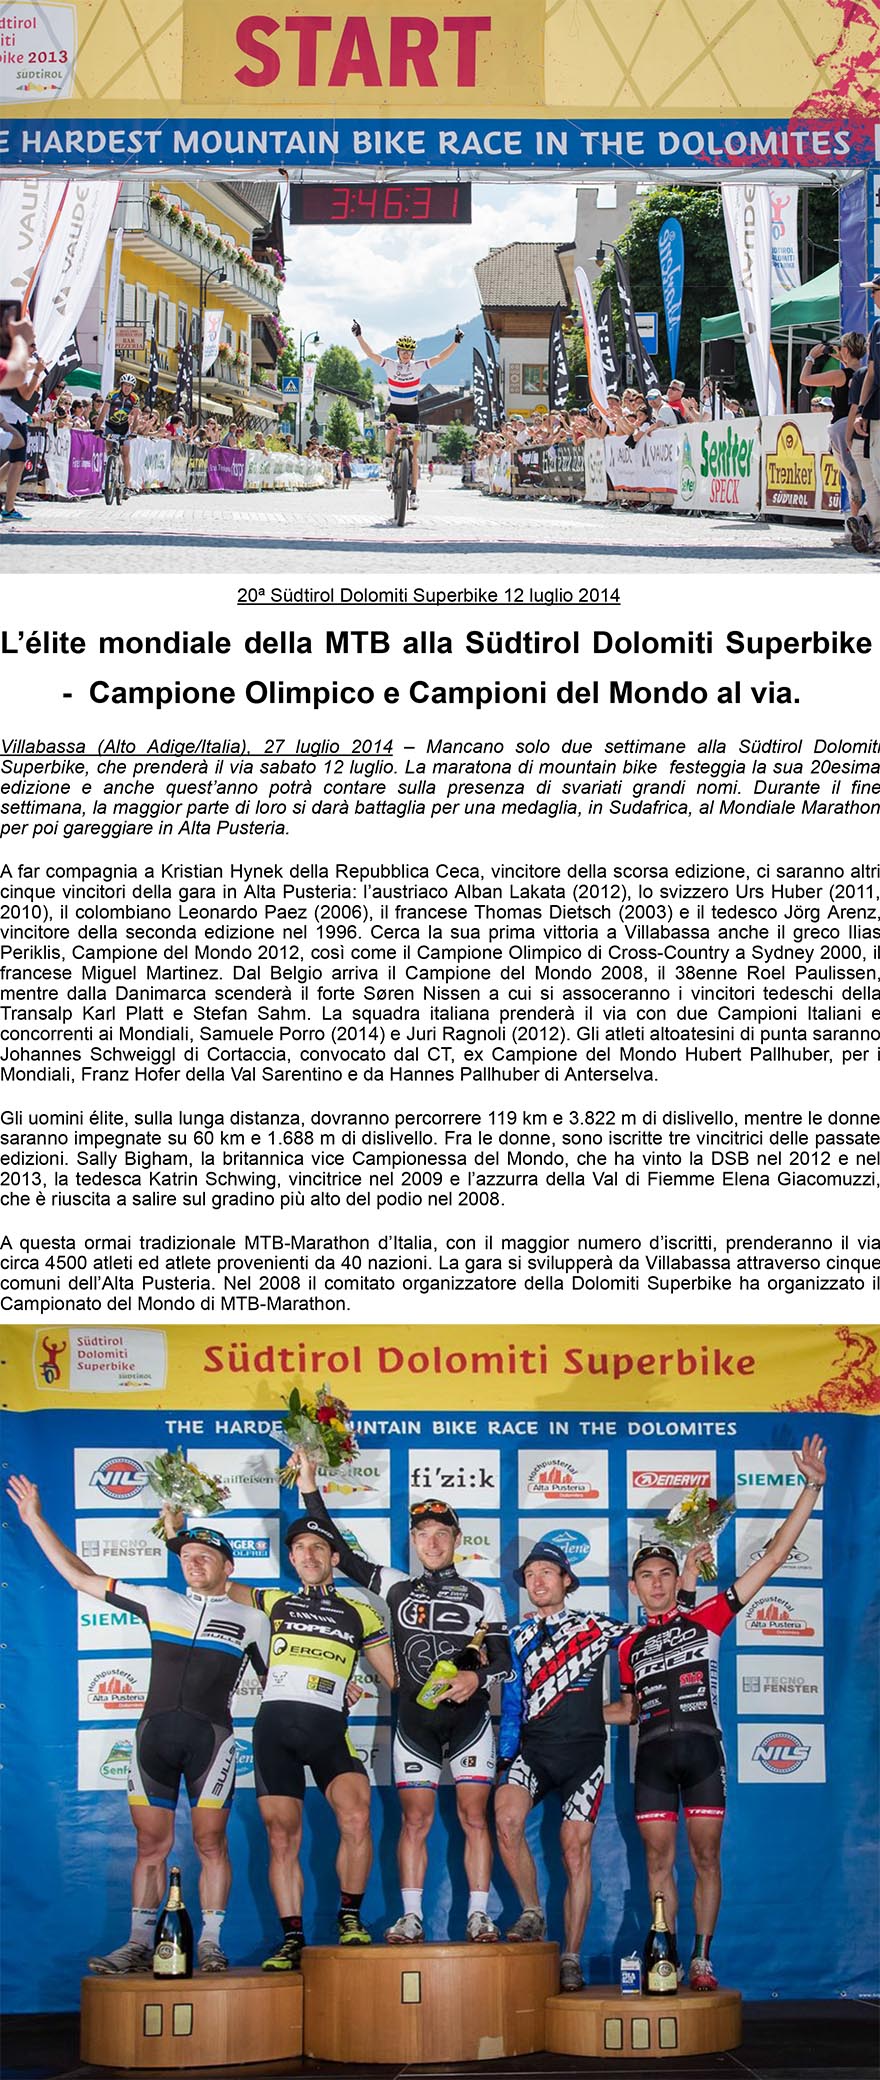 Sudtirol Dolomiti Superbike il 12 luglio 2014  Lélite mondiale della MTB al via